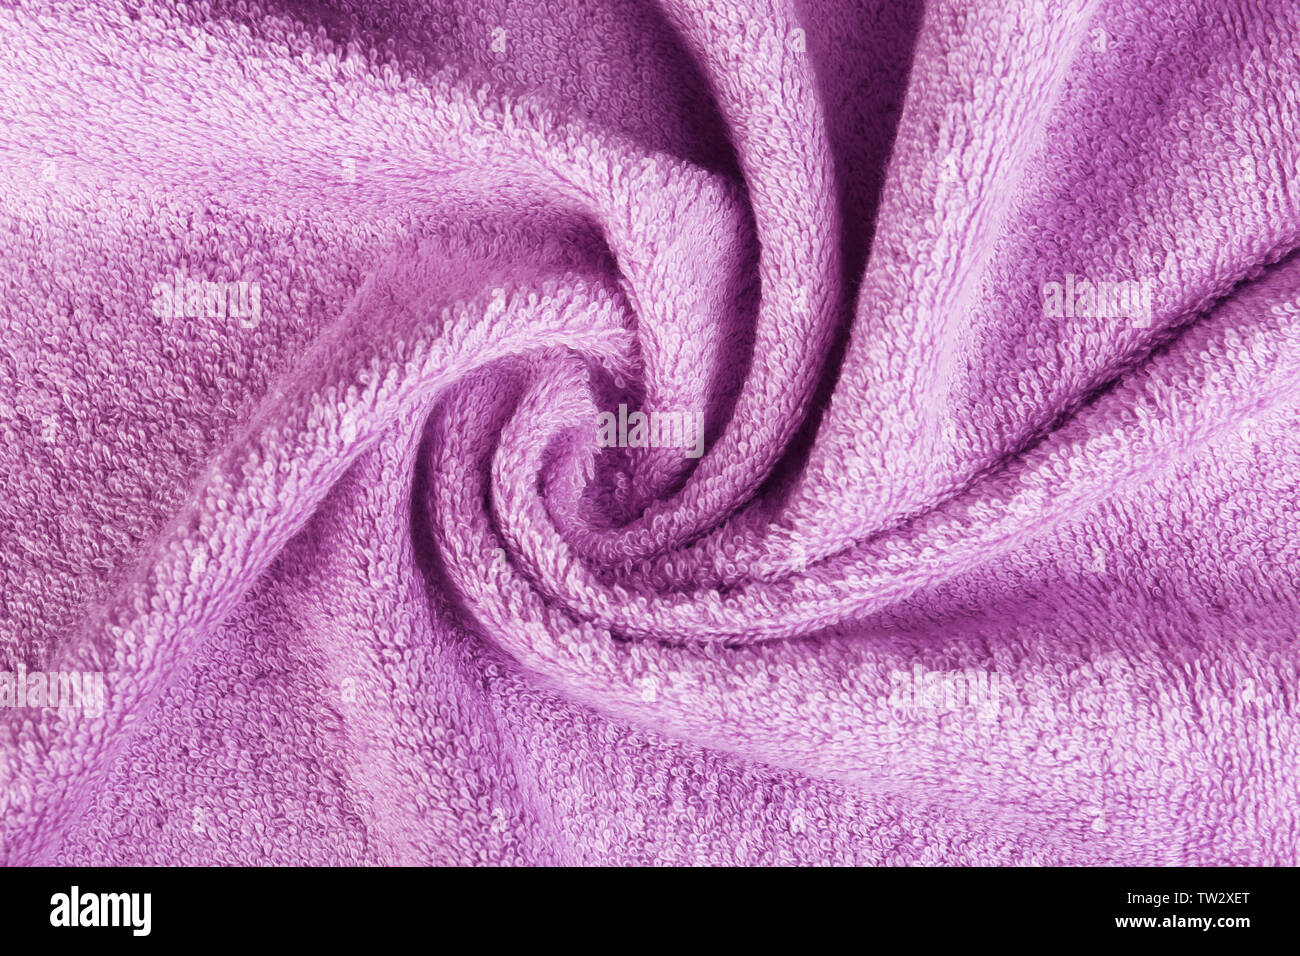 Lilac terry cloth texture, closeup Stock Photo